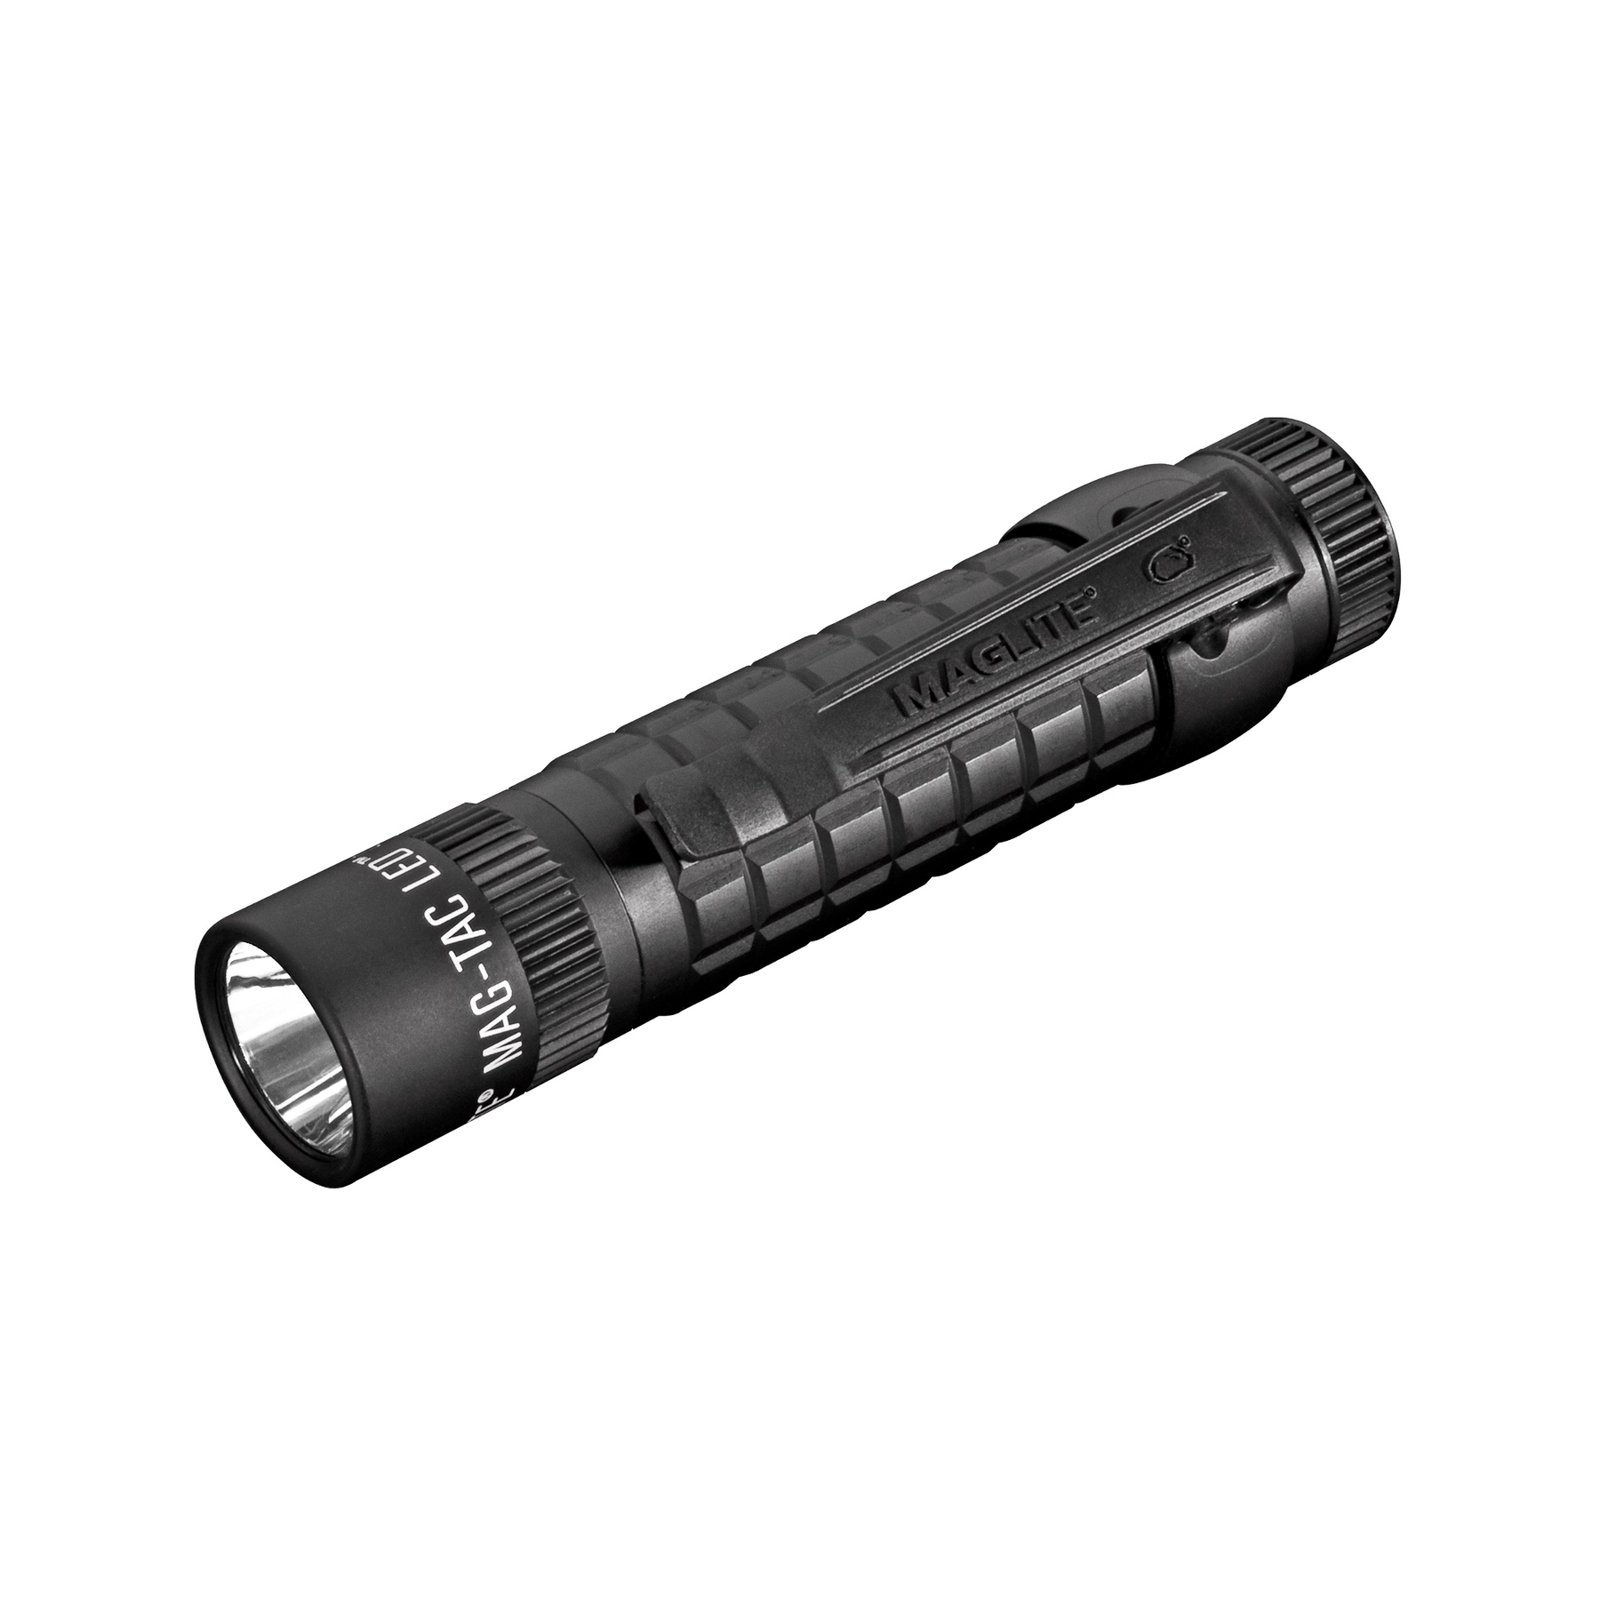 Φακός LED Maglite Mag-Tac, 2 κυψελών CR123, μαύρο